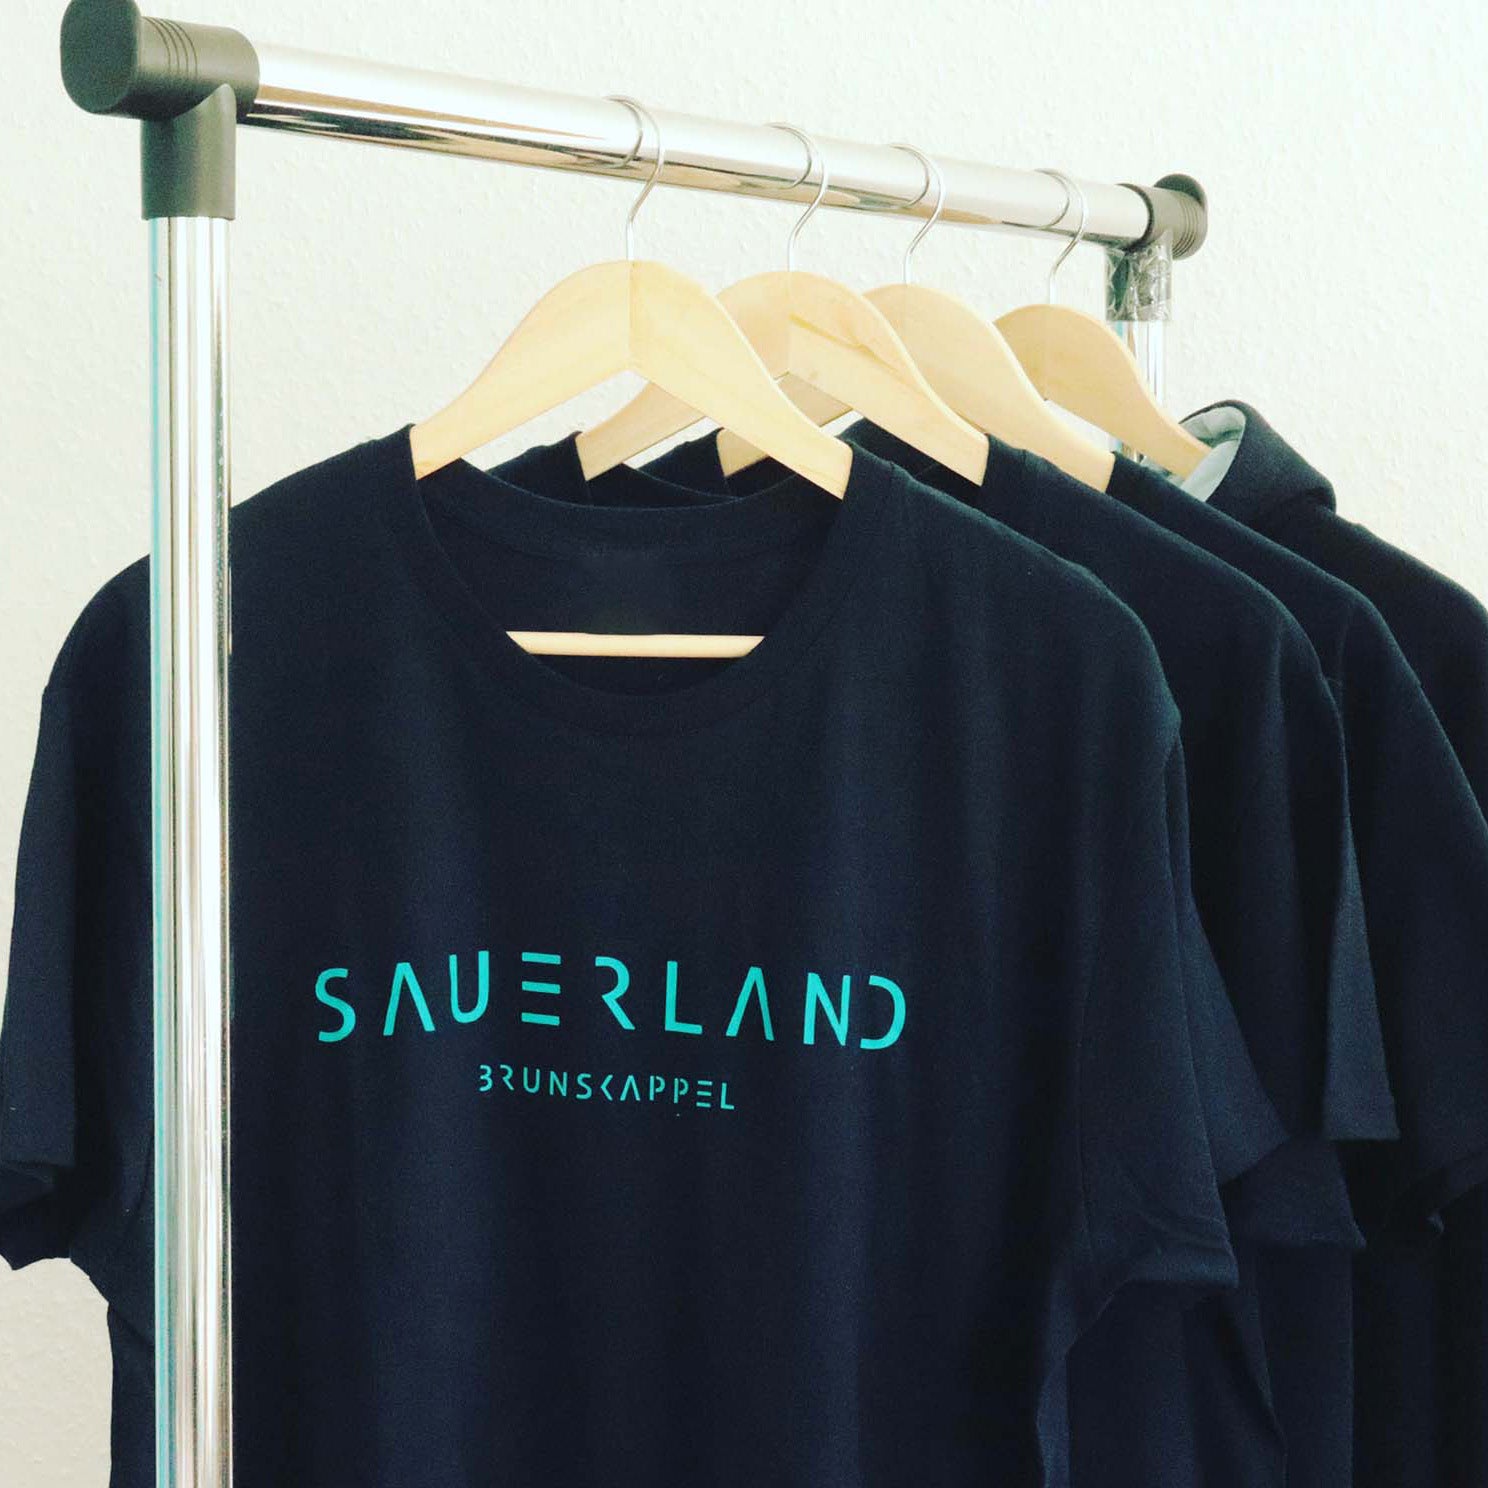 Kleiderstange mit dunkelblauen T-Shirts. In türkis ist der new Sauerland-Schriftzug aufgedruckt. Darunter, ebenfalls in türkis, ist der Dorfname Brunskappel aufgedruckt. Jeder Sauerländer Dorfname kann auf Wunsch aufgedruckt werden.